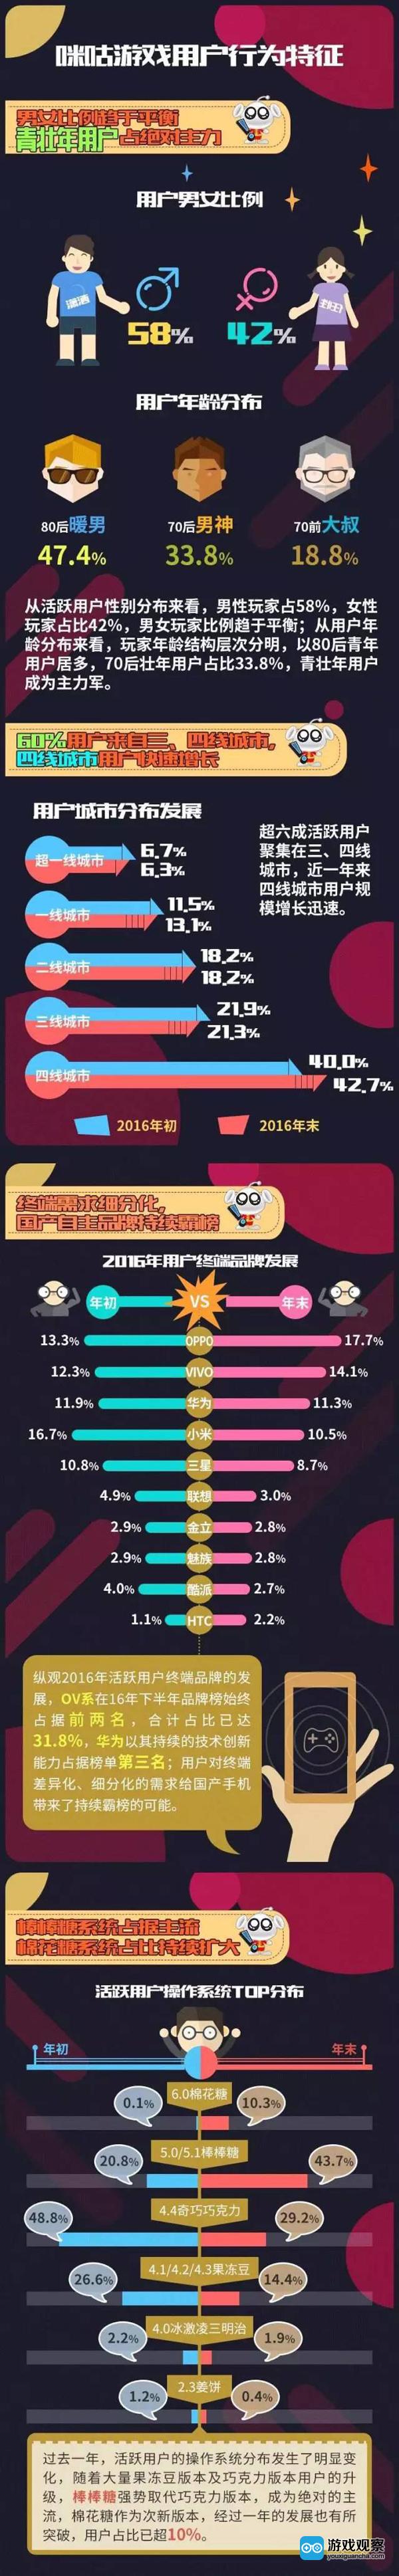 咪咕游戏2016年度数据报告